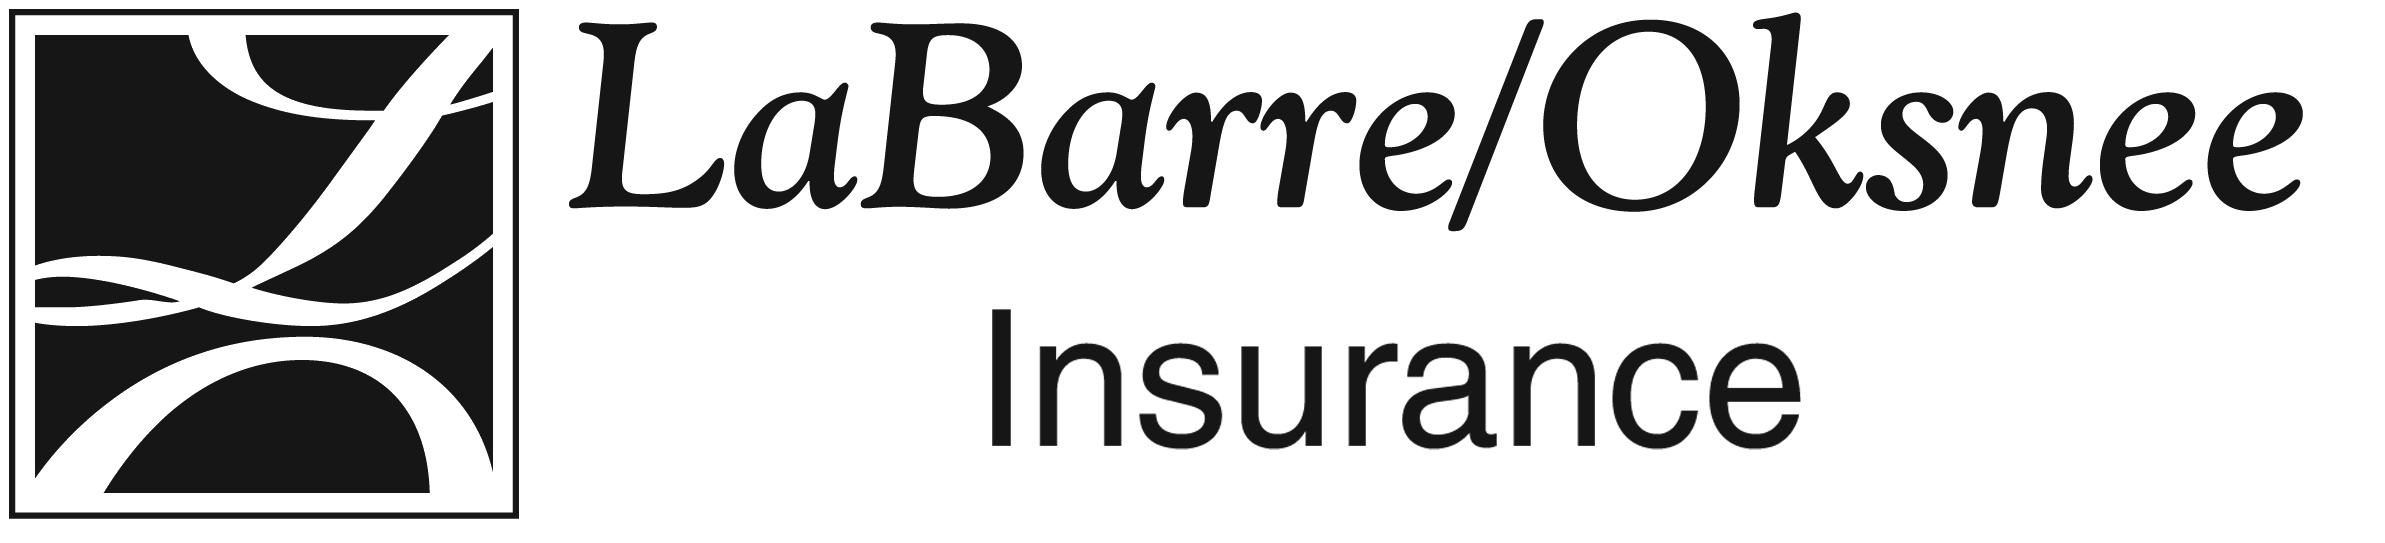 LaBarre/Oksnee Insurance